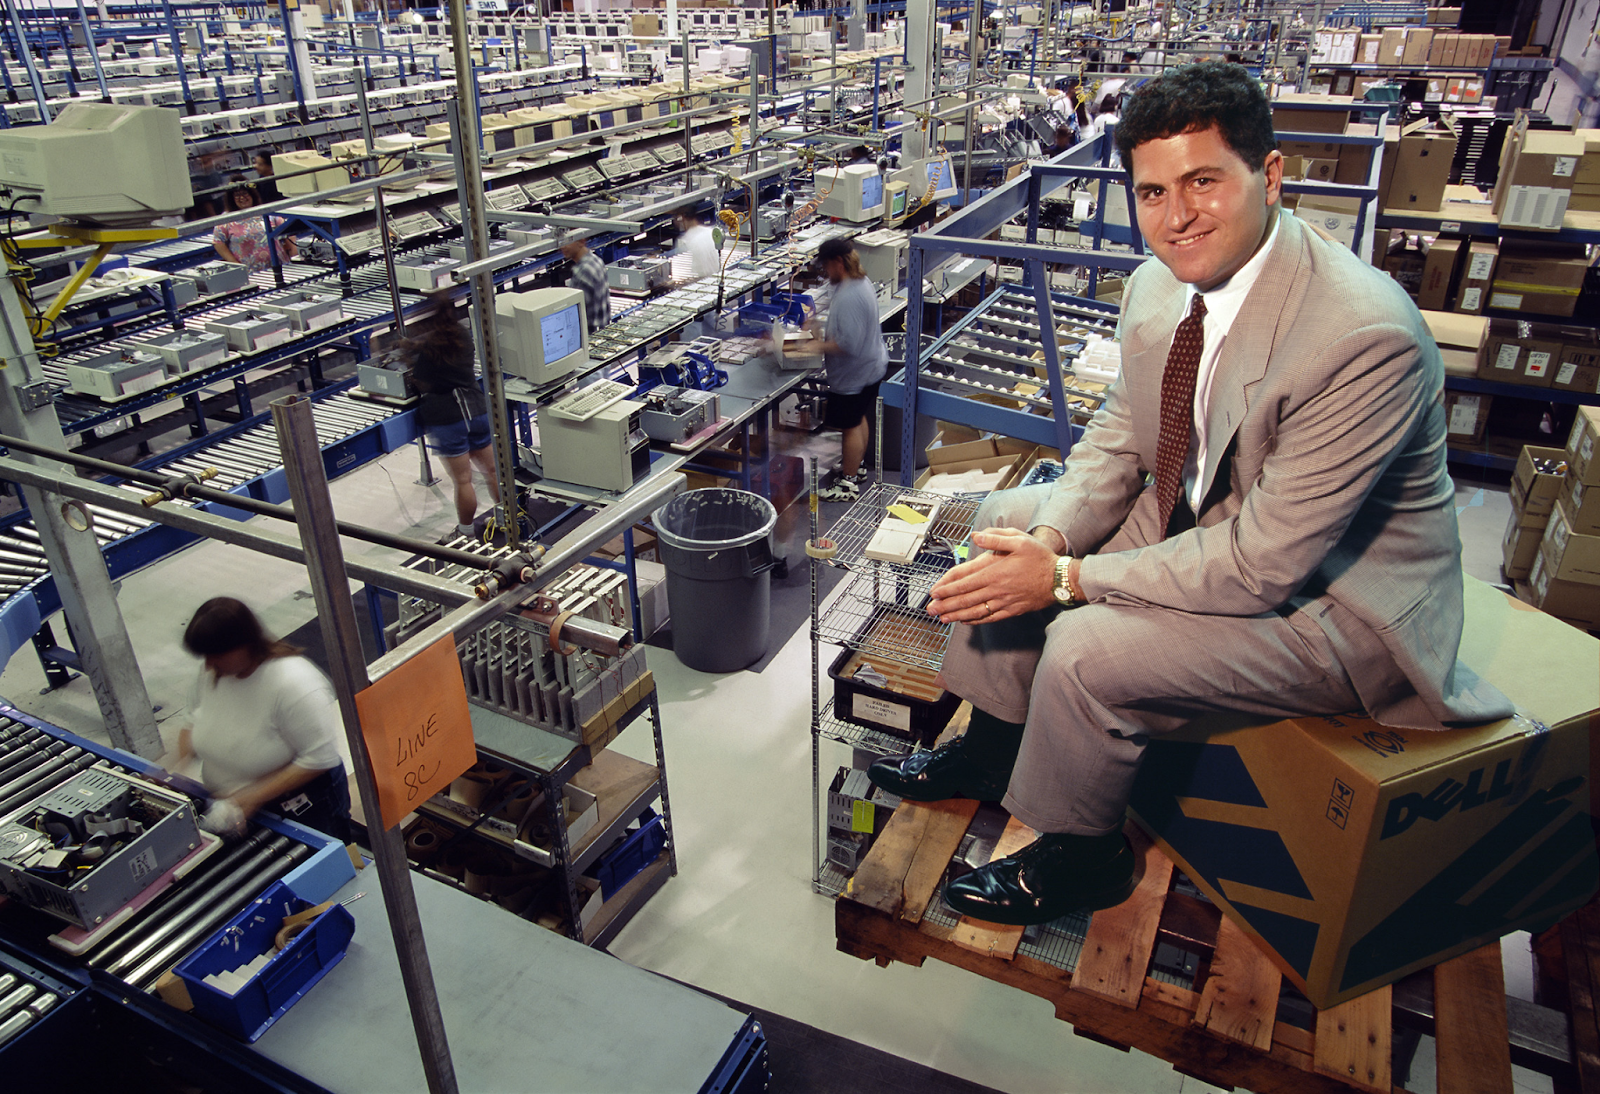 Делл контролирует процесс сборки на производственной линии своего компьютерного завода в Остине, штат Техас, 1996 год